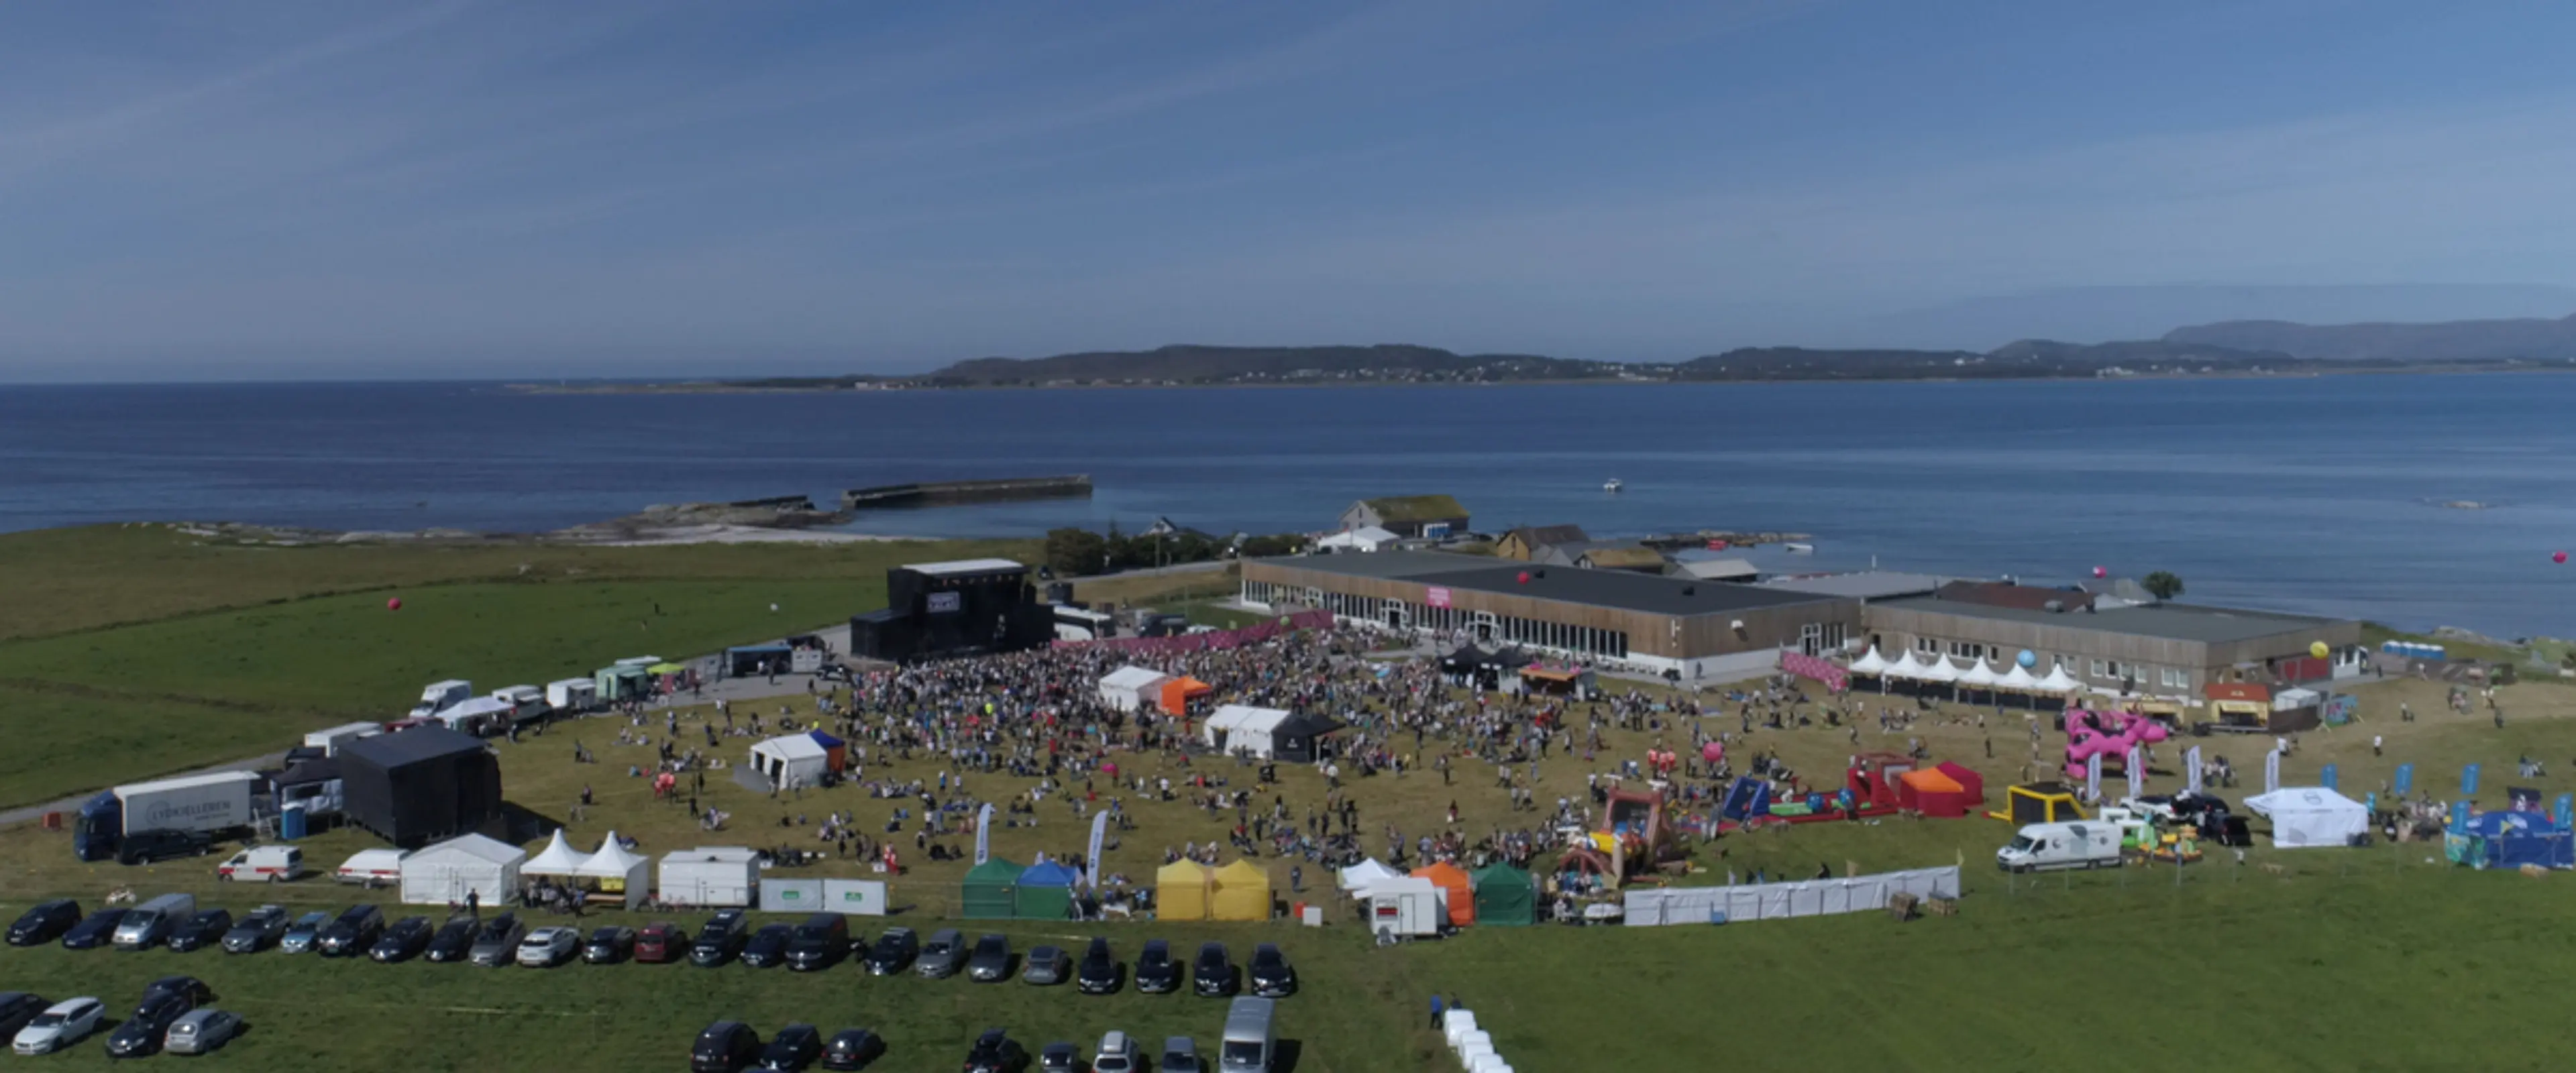 Musikkfestival når bærekraftsmål med støtte fra Norengros